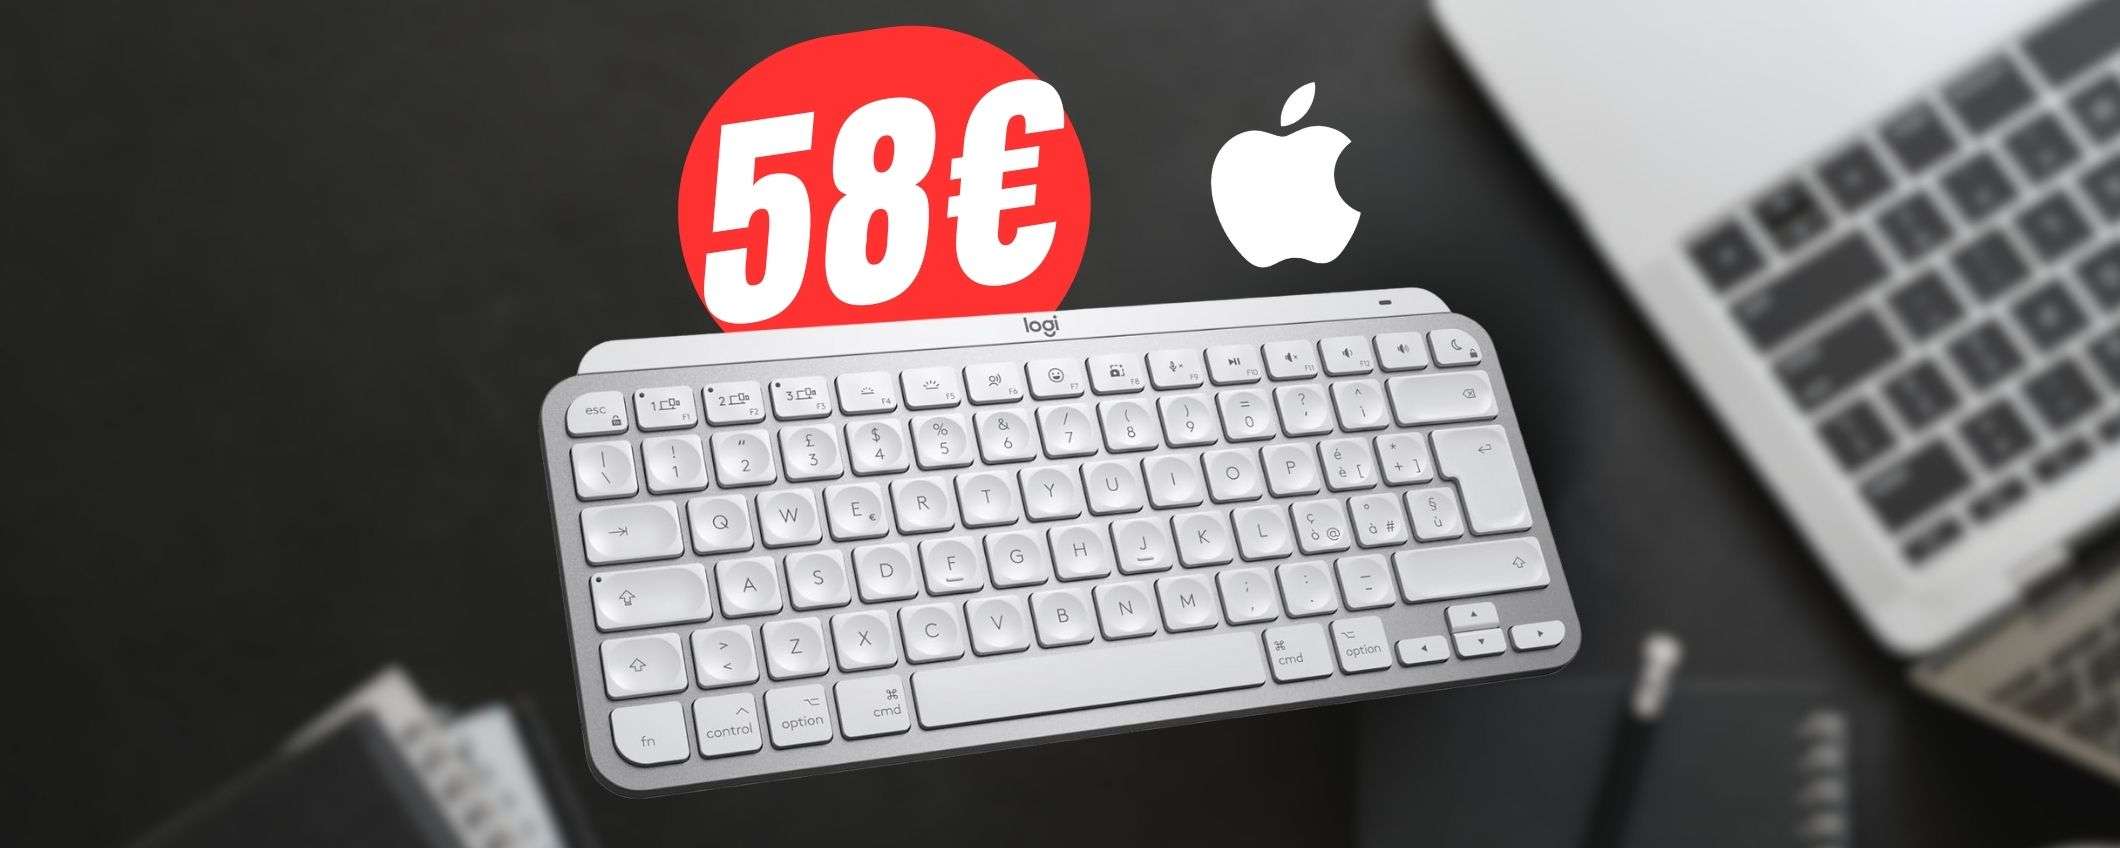 Meglio della Magic Keyboard ma a 58€: la tastiera Logitech dei sogni è scontatissima!